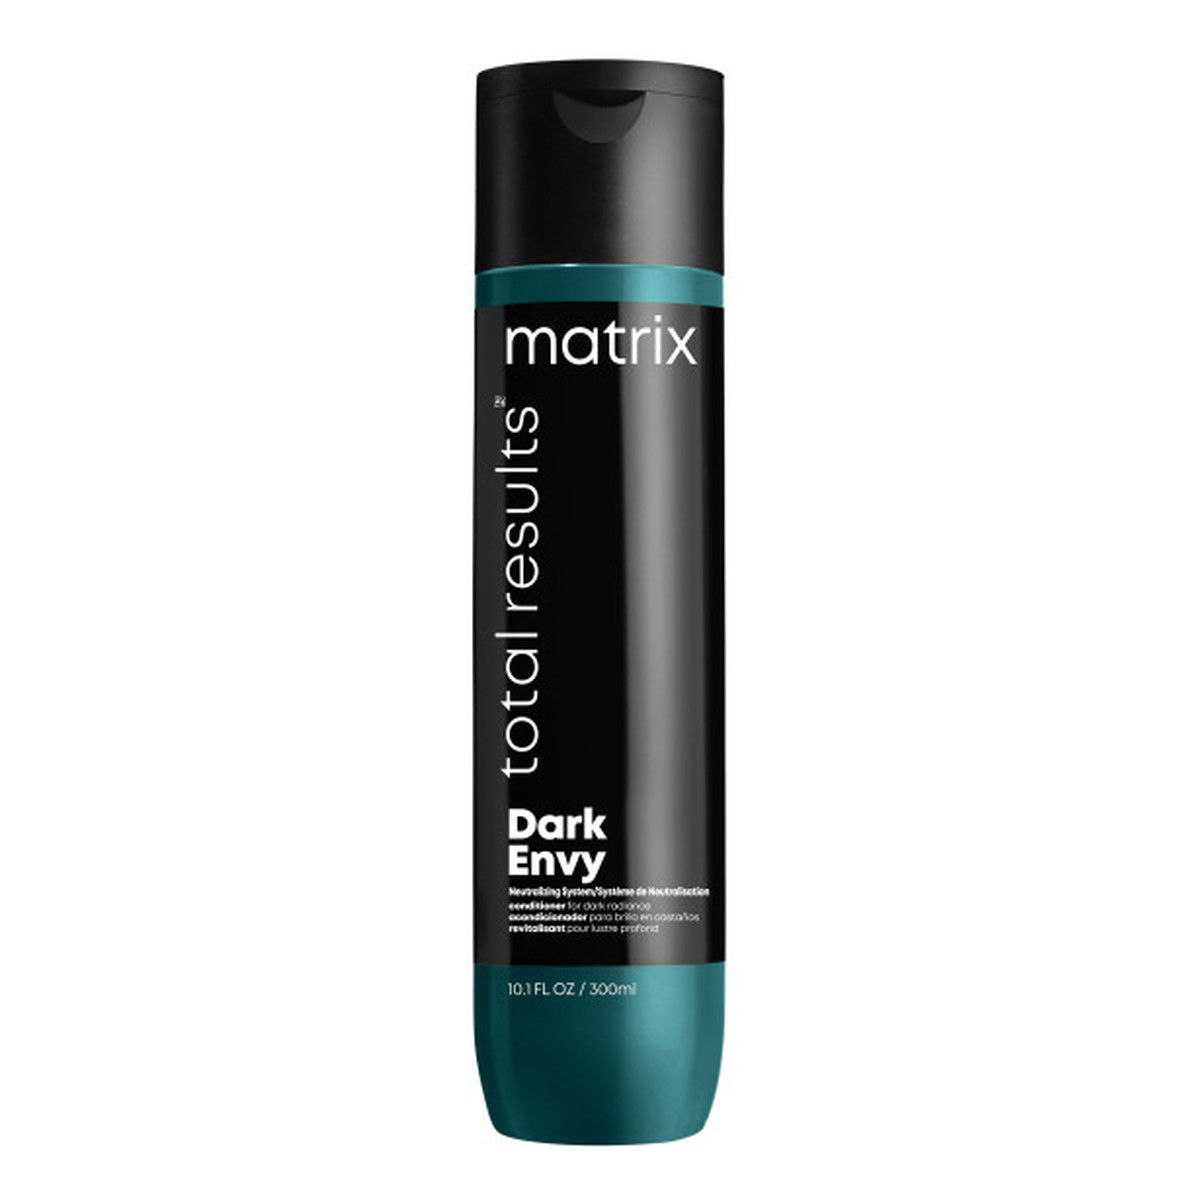 Matrix Total results dark envy odżywka do włosów ciemnych neutralizująca miedziane odcienie 300ml